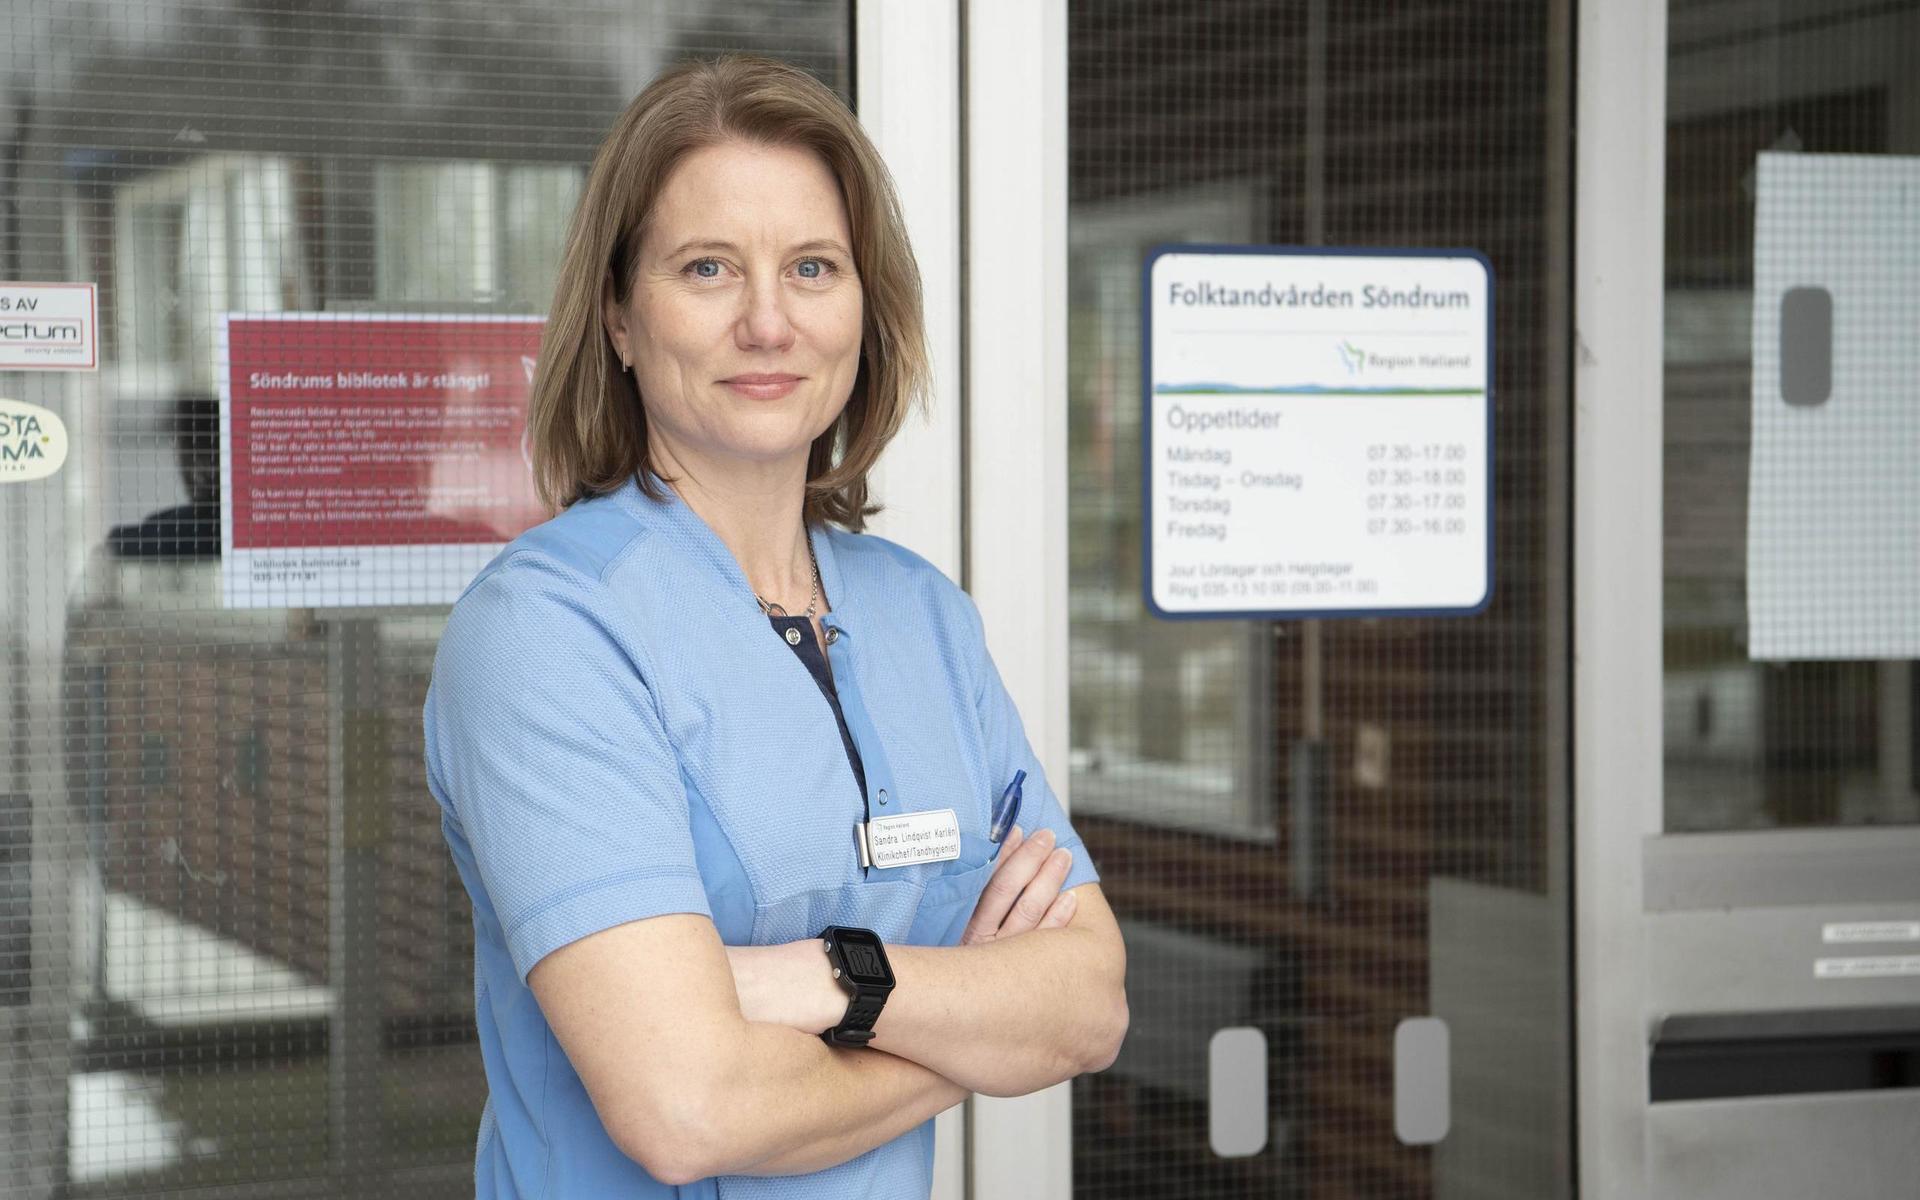 Sandra Lindqvist Karlén är chef för både folktandvården i Söndrum och i Getinge. Båda klinikerna sticker ut genom att inte har några köer. ”Först och främst så har vi personal på plats och har fått behålla dem. Det är en stor faktor”, säger hon.